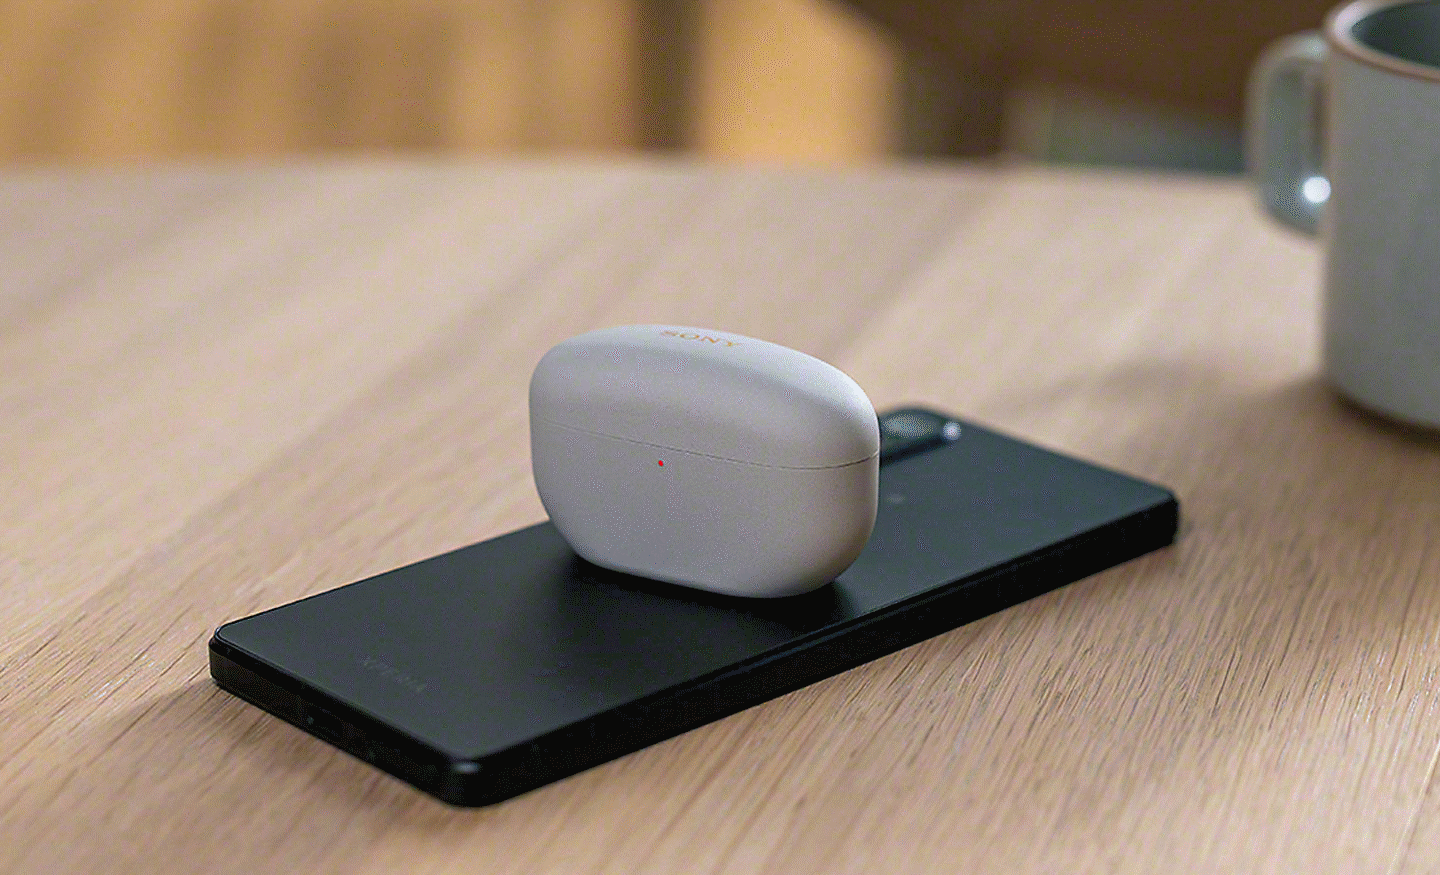 Snímek sluchátek do uší Sony uložených v pouzdře položeném na zadní straně smartphonu Xperia